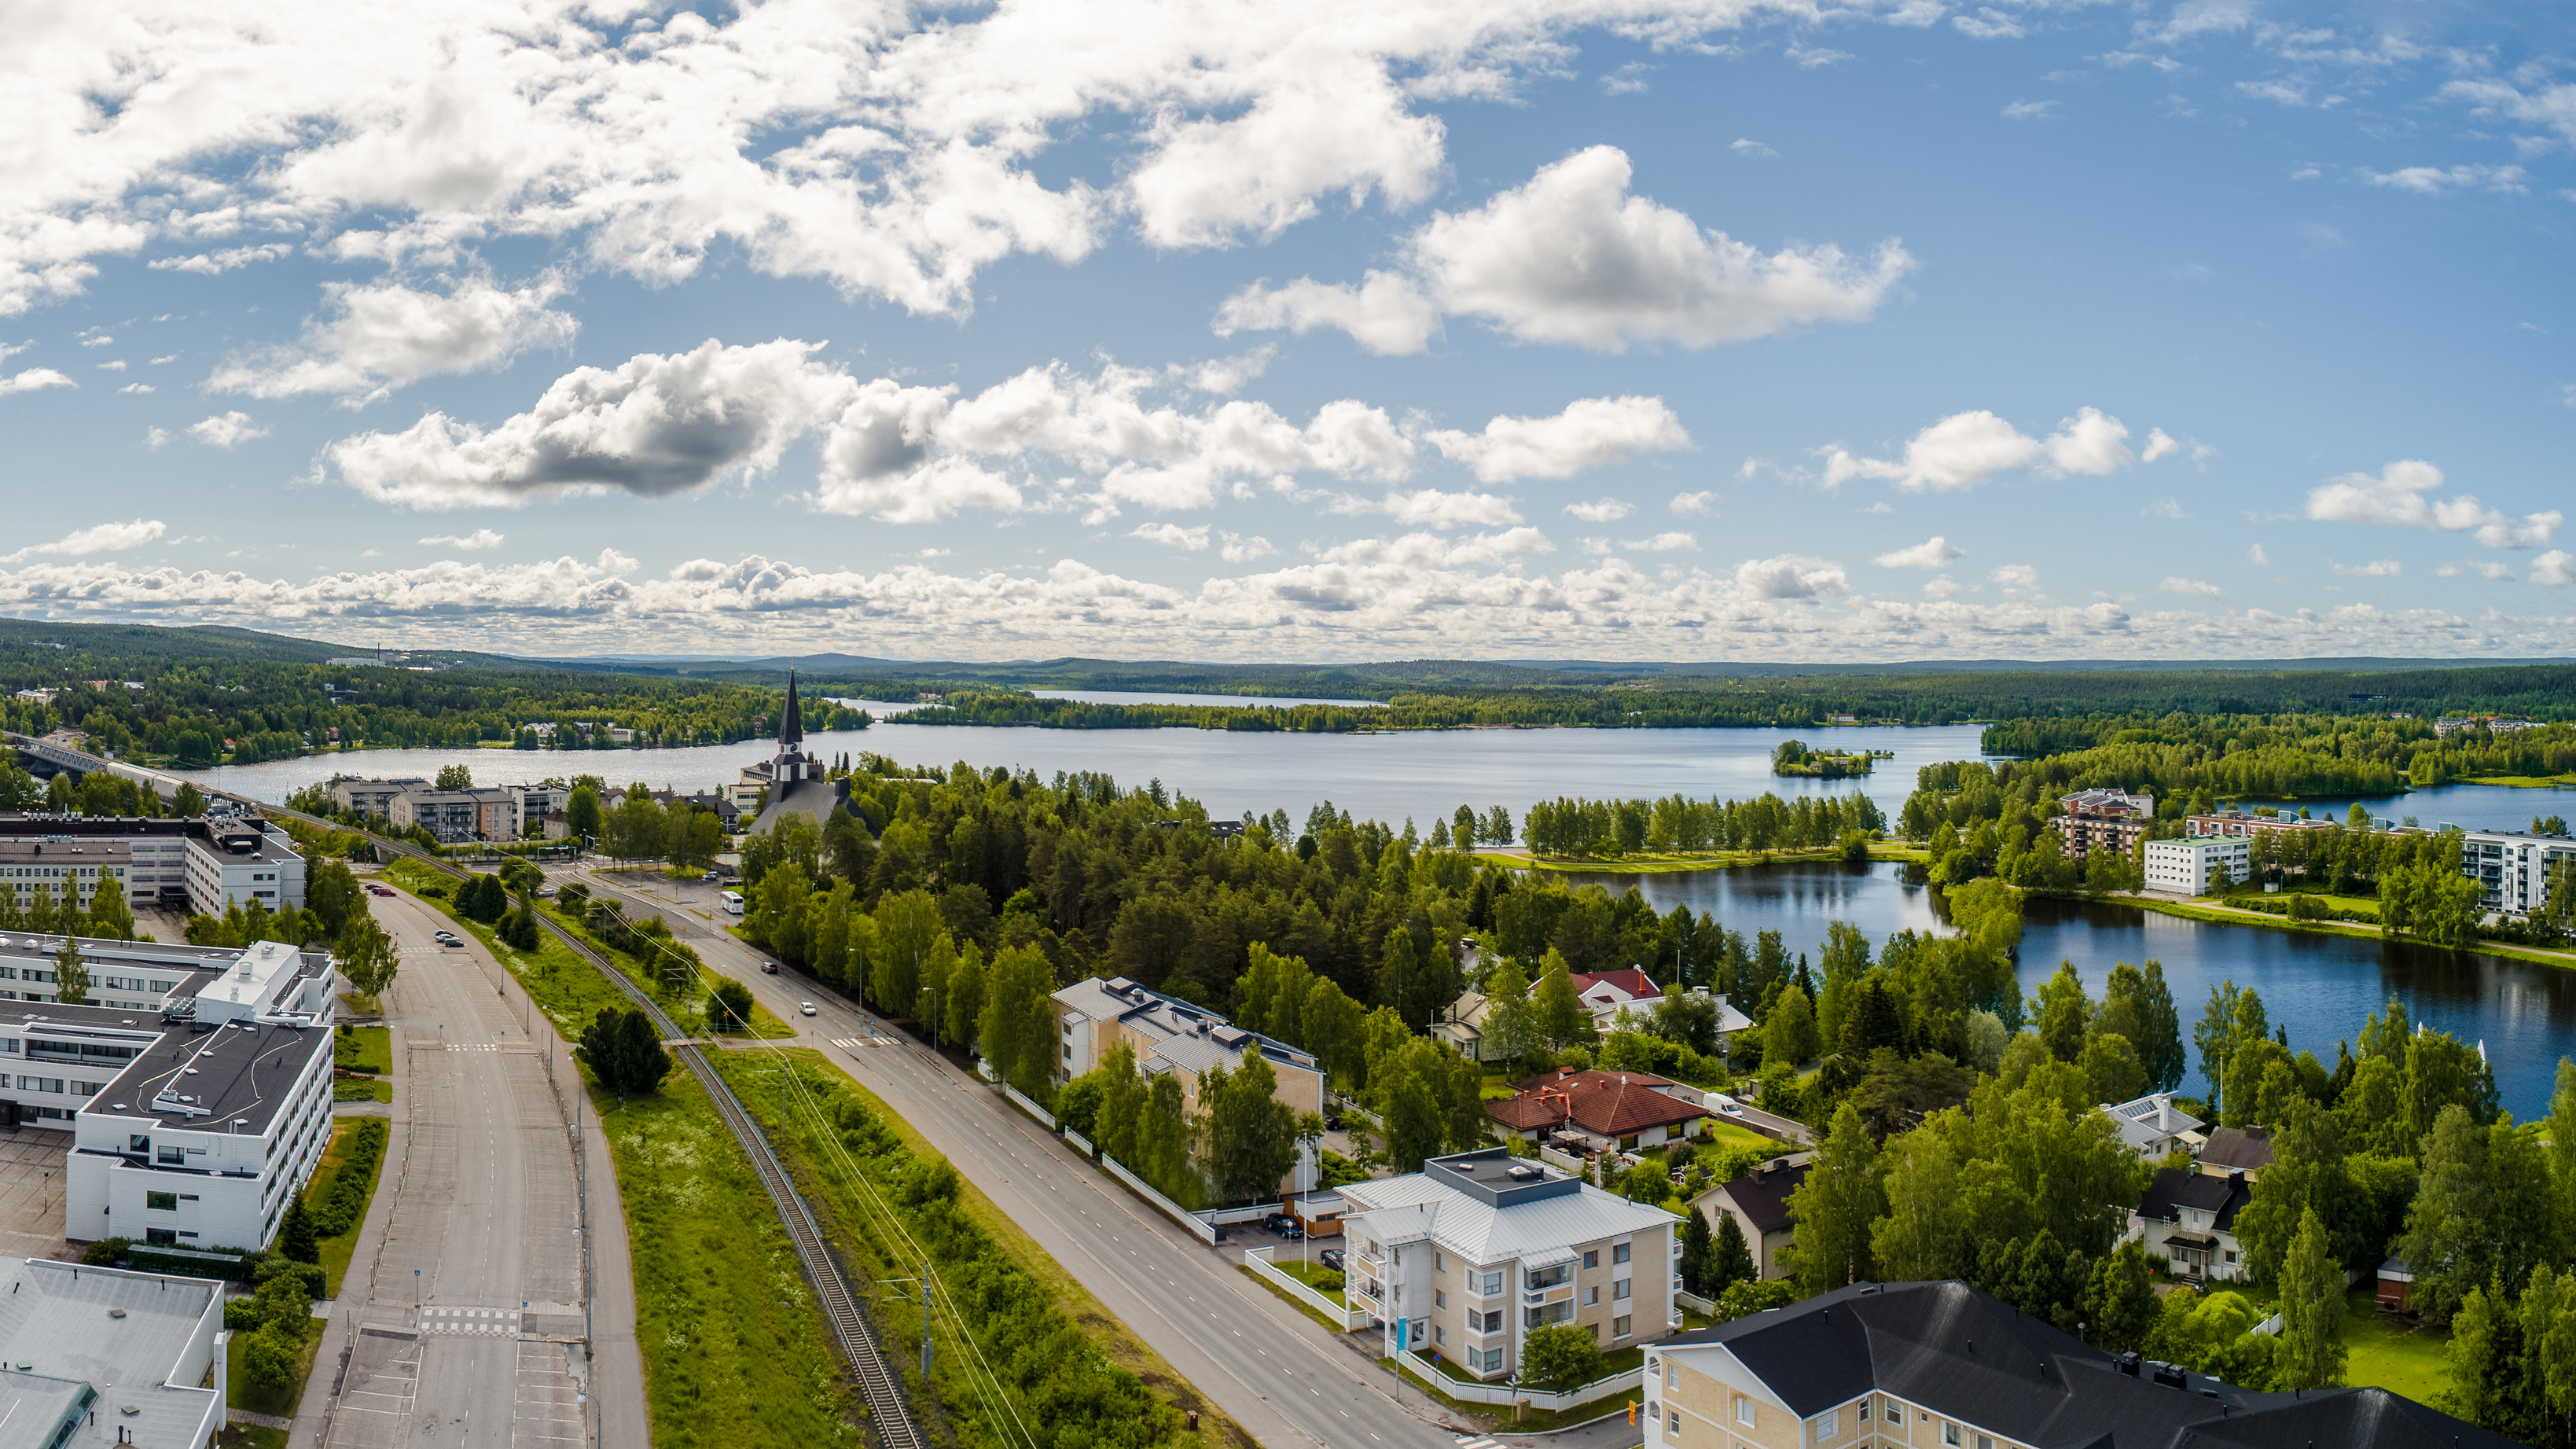 Rovaniemen kauniit maisemat houkuttelevat turisteja ympäri vuoden.